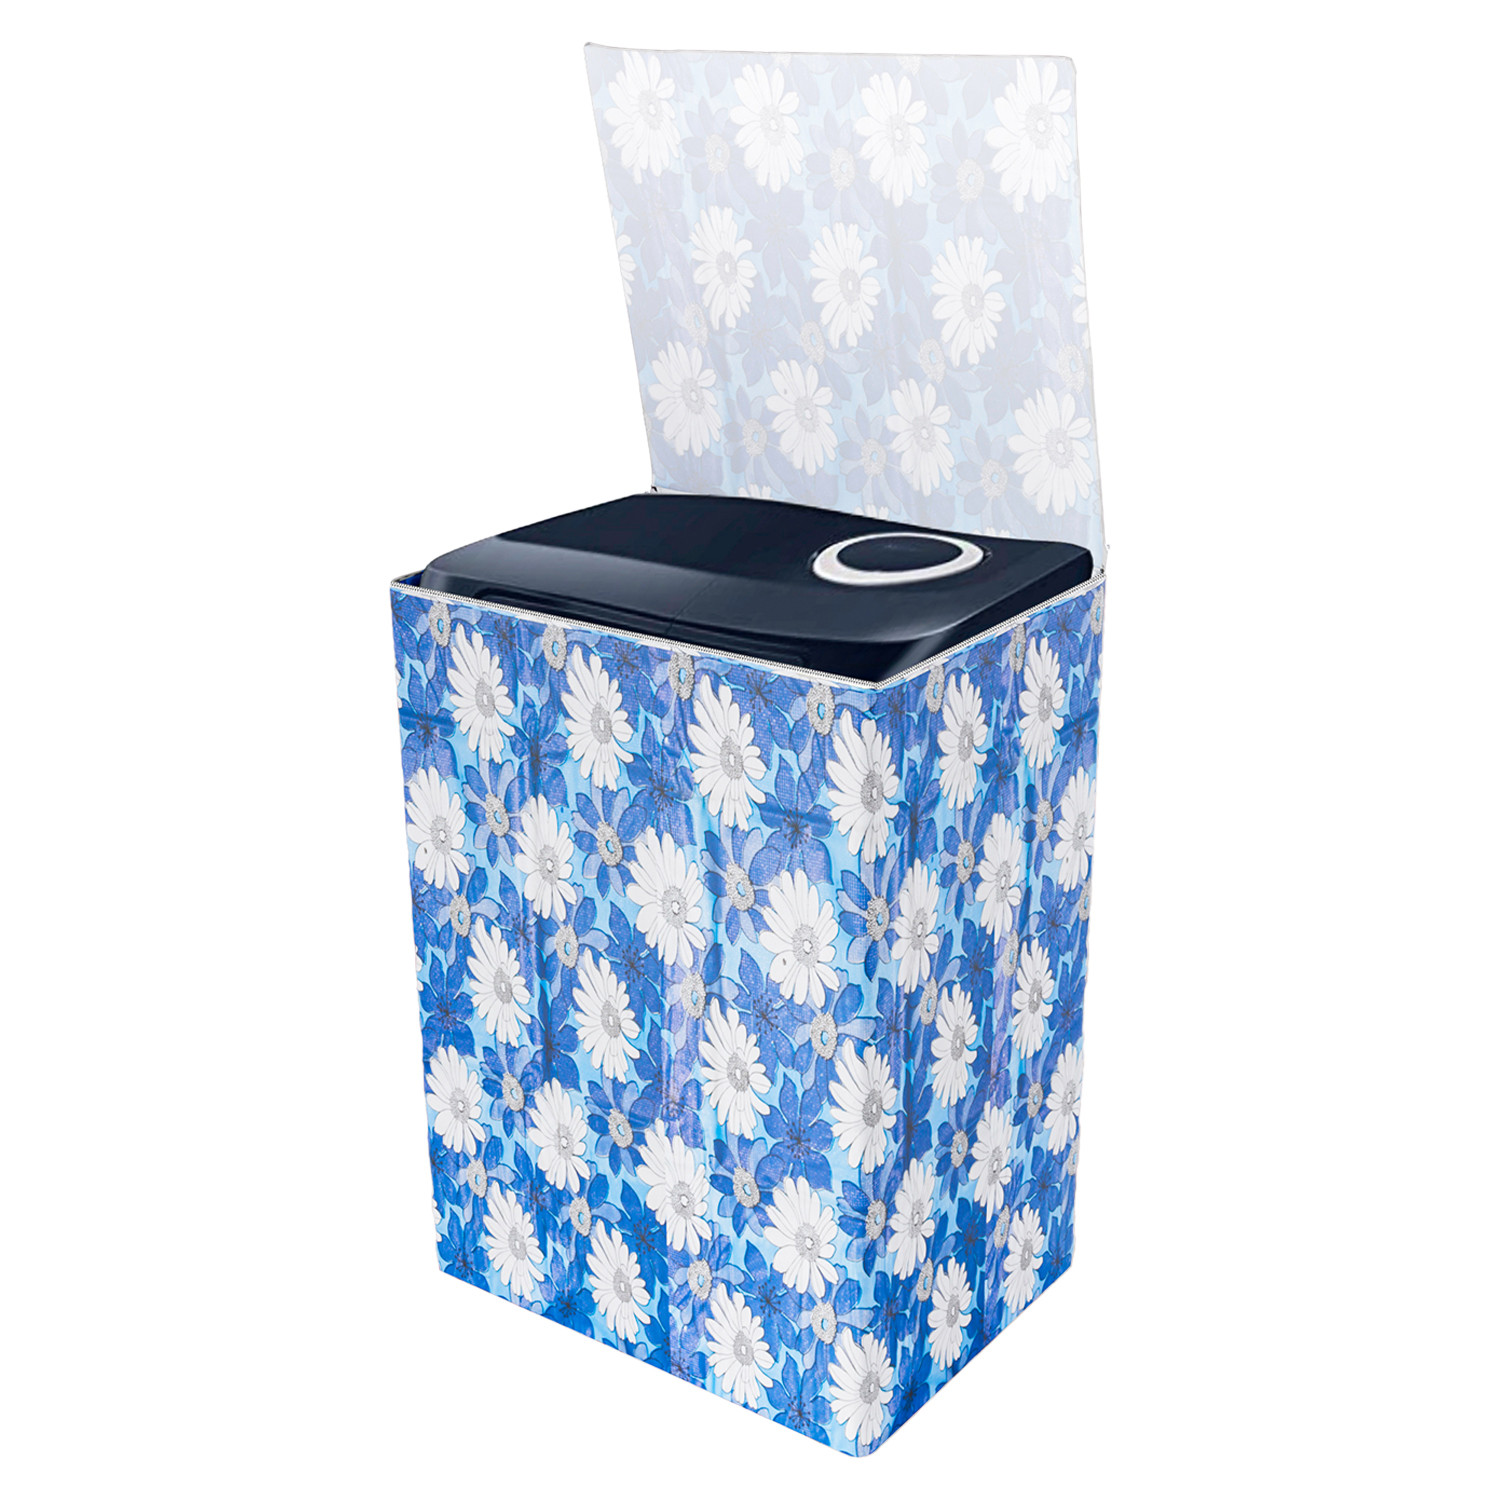 Kuber Industries Washing Machine Cover | Sun Flower Print Washing Machine Cover | PVC Top Load Semi-Automatic Washing Machine Cover | Blue